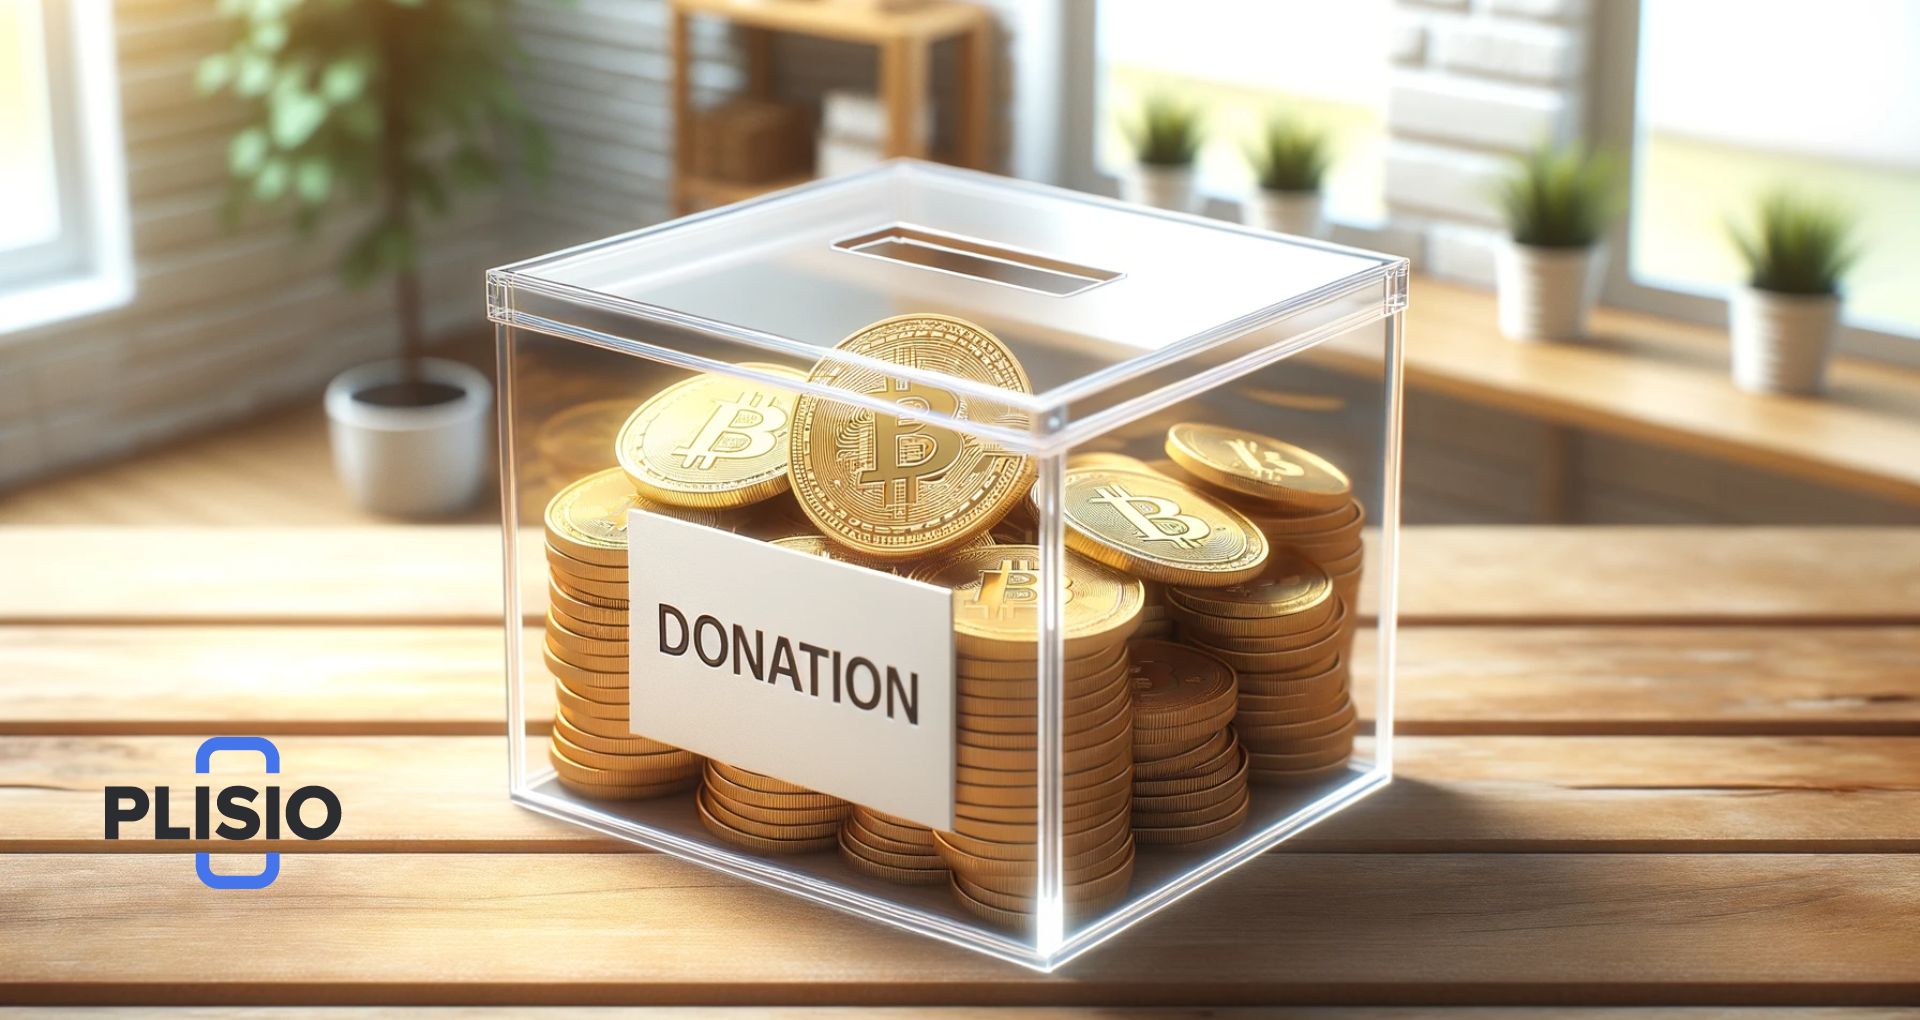 أعمال البيتكوين الخيرية: كيف وأين تتبرع بالعملات المشفرة الخاصة بك